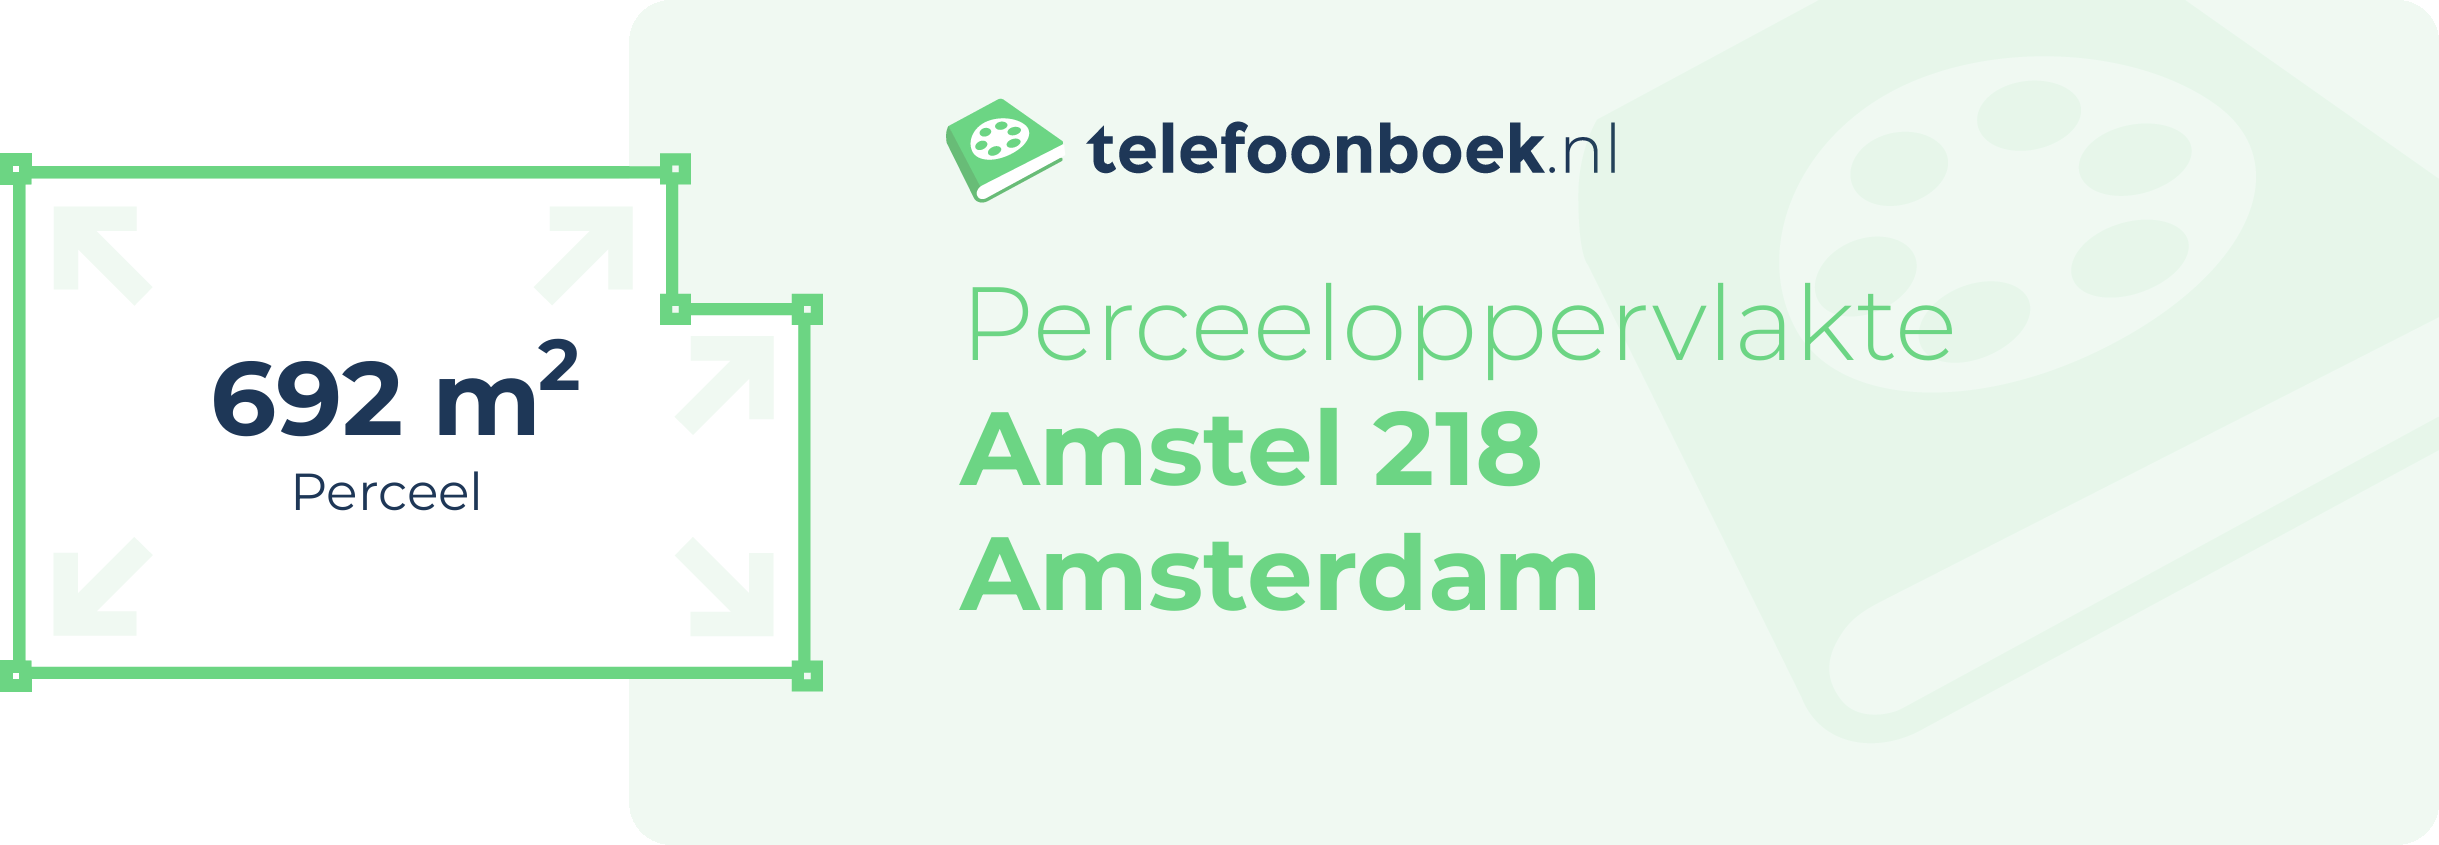 Perceeloppervlakte Amstel 218 Amsterdam